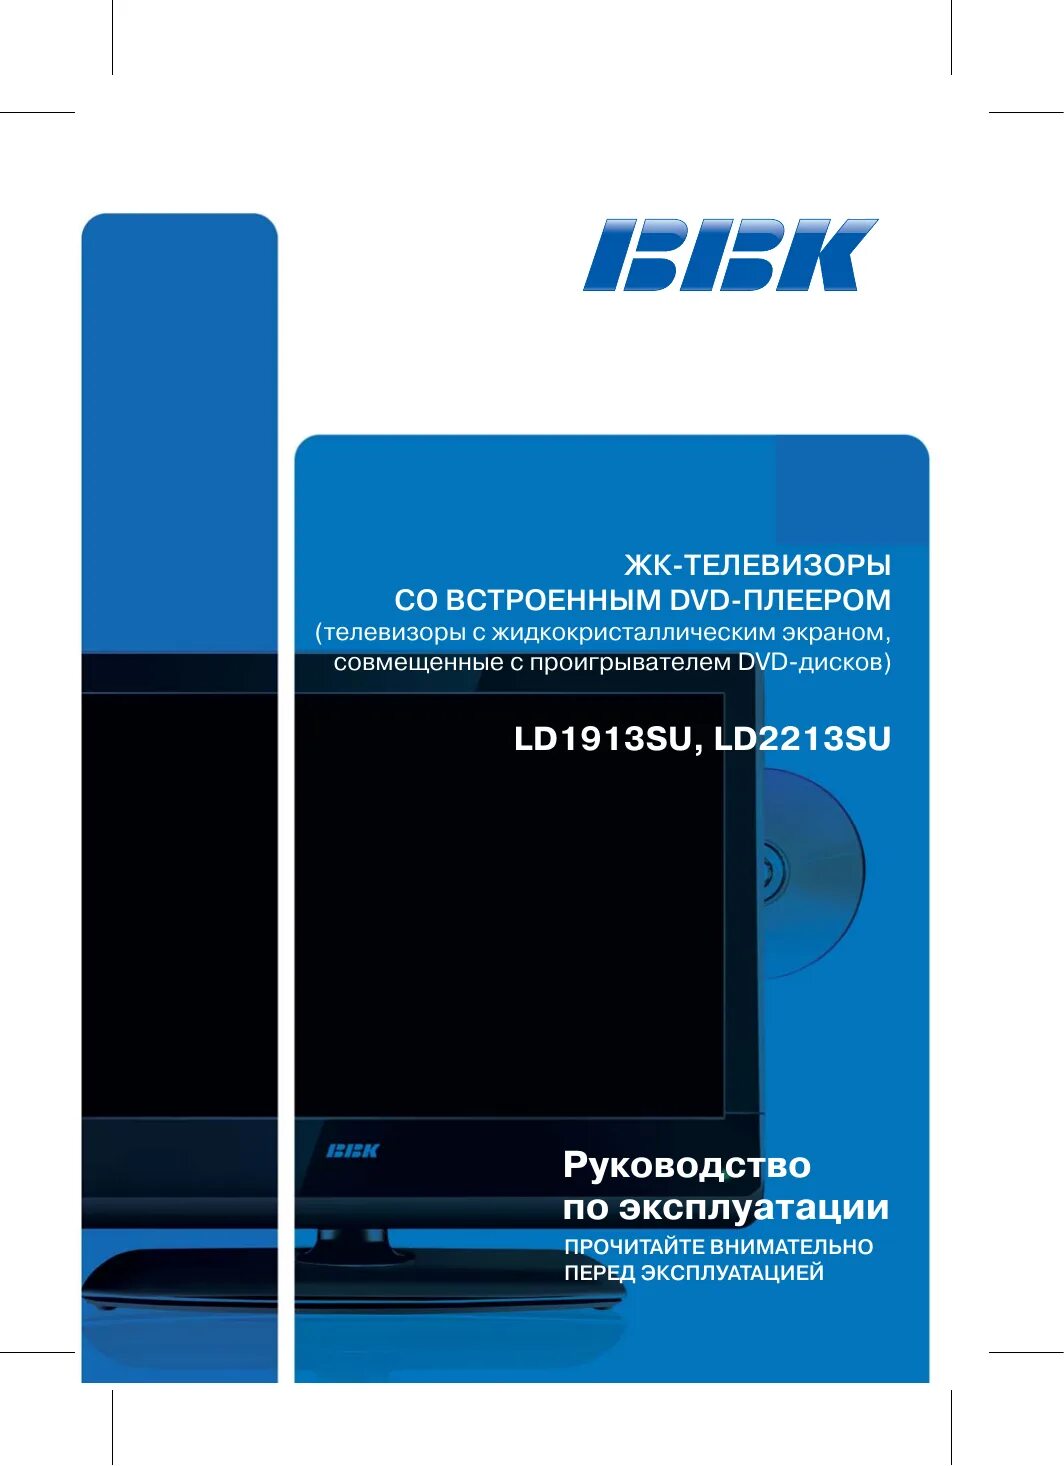 BBK ld1913su. Телевизор ВВК model ld1913su. BBK инструкция. BBK - ld2213su сервисное меню.